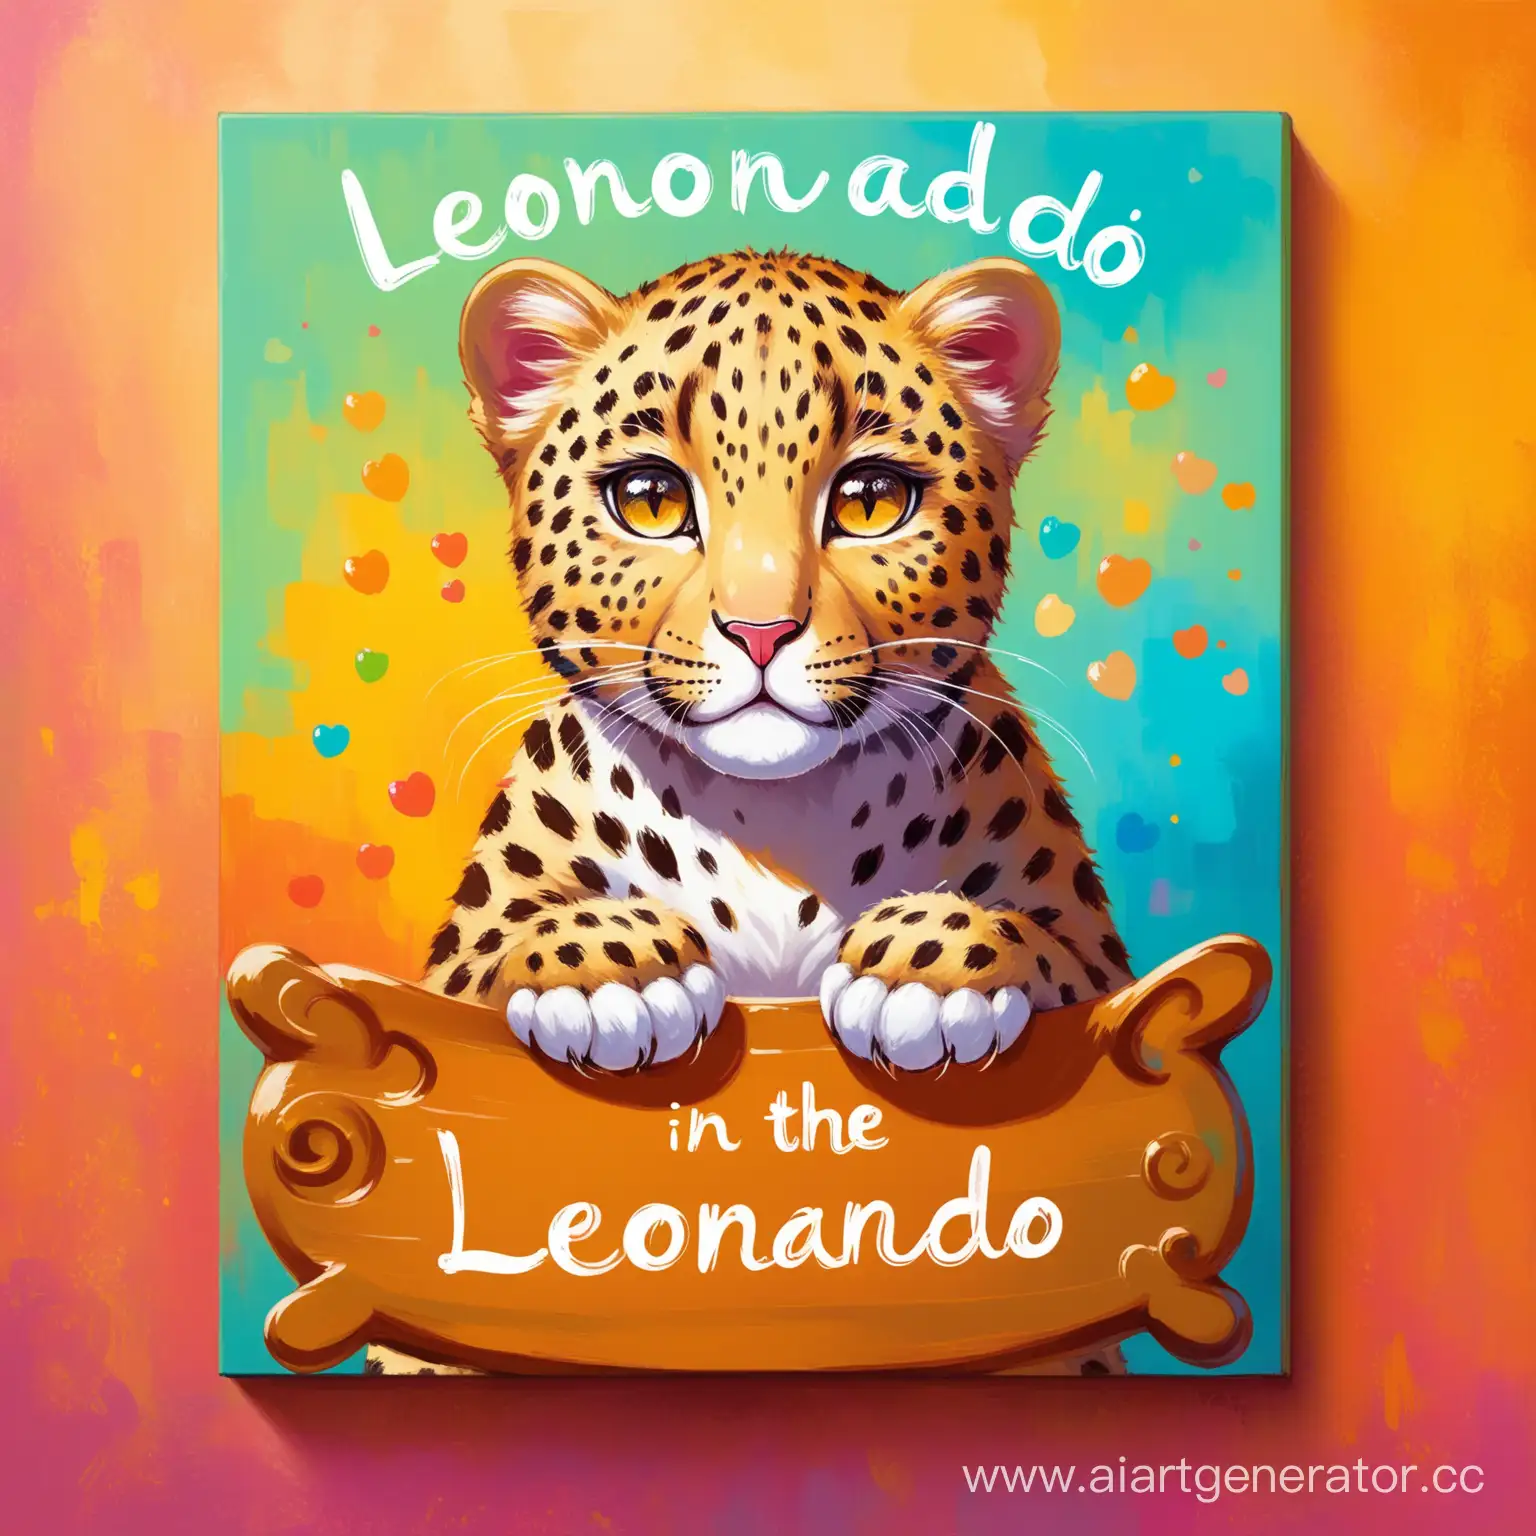 масляная живопись, милый леопард, разноцветный фон, на фоне надпись "леонардо"